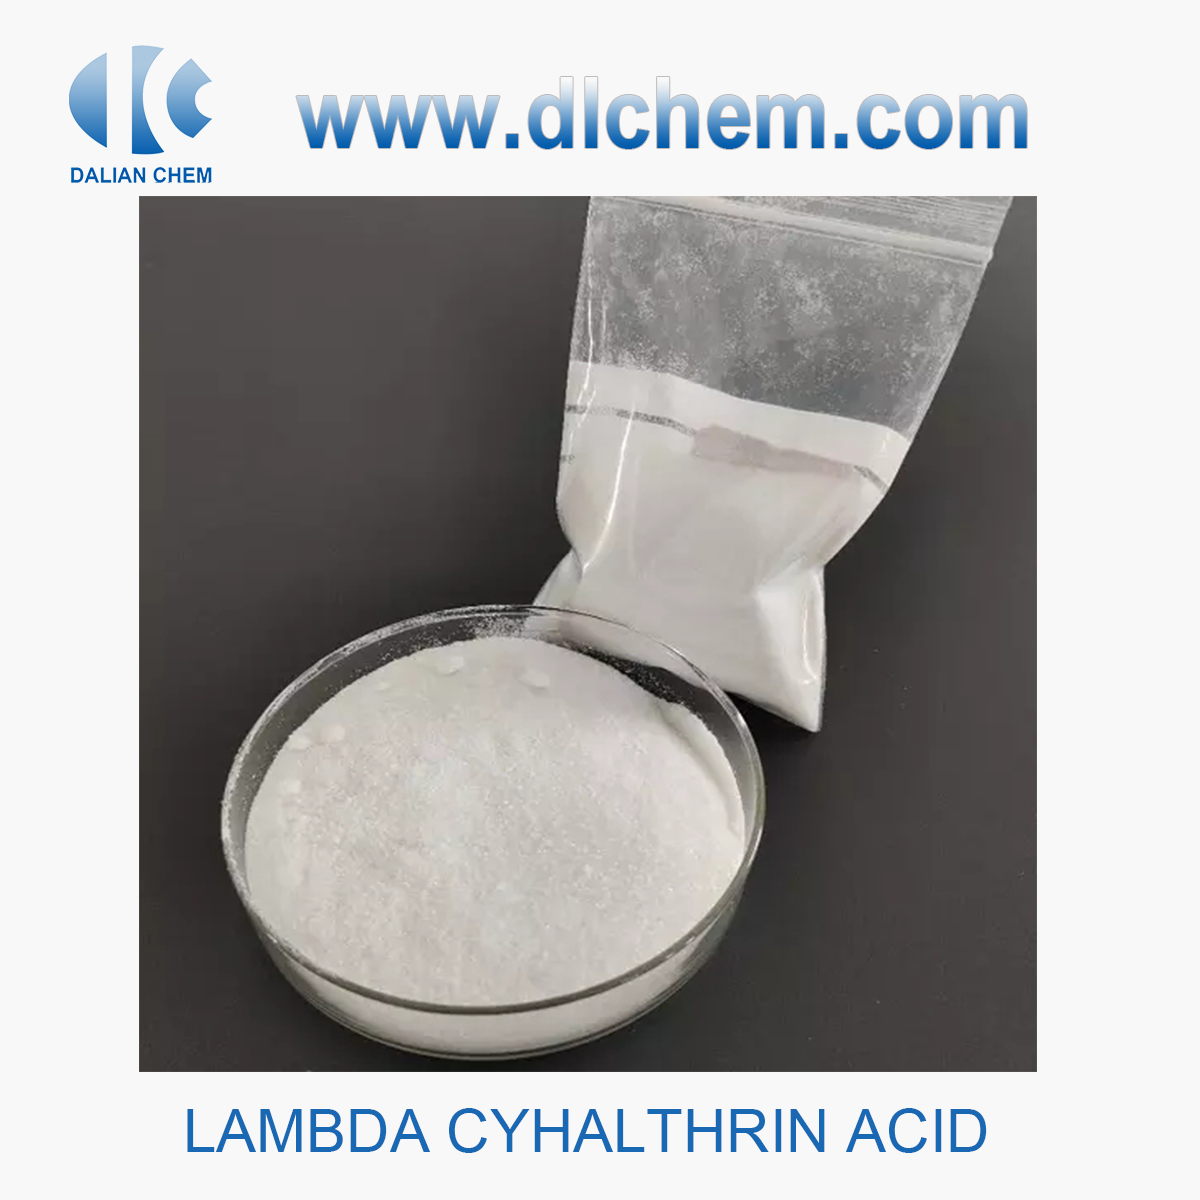 High Purity Lambda Cyhalothrin Acid 99% Manufacturer